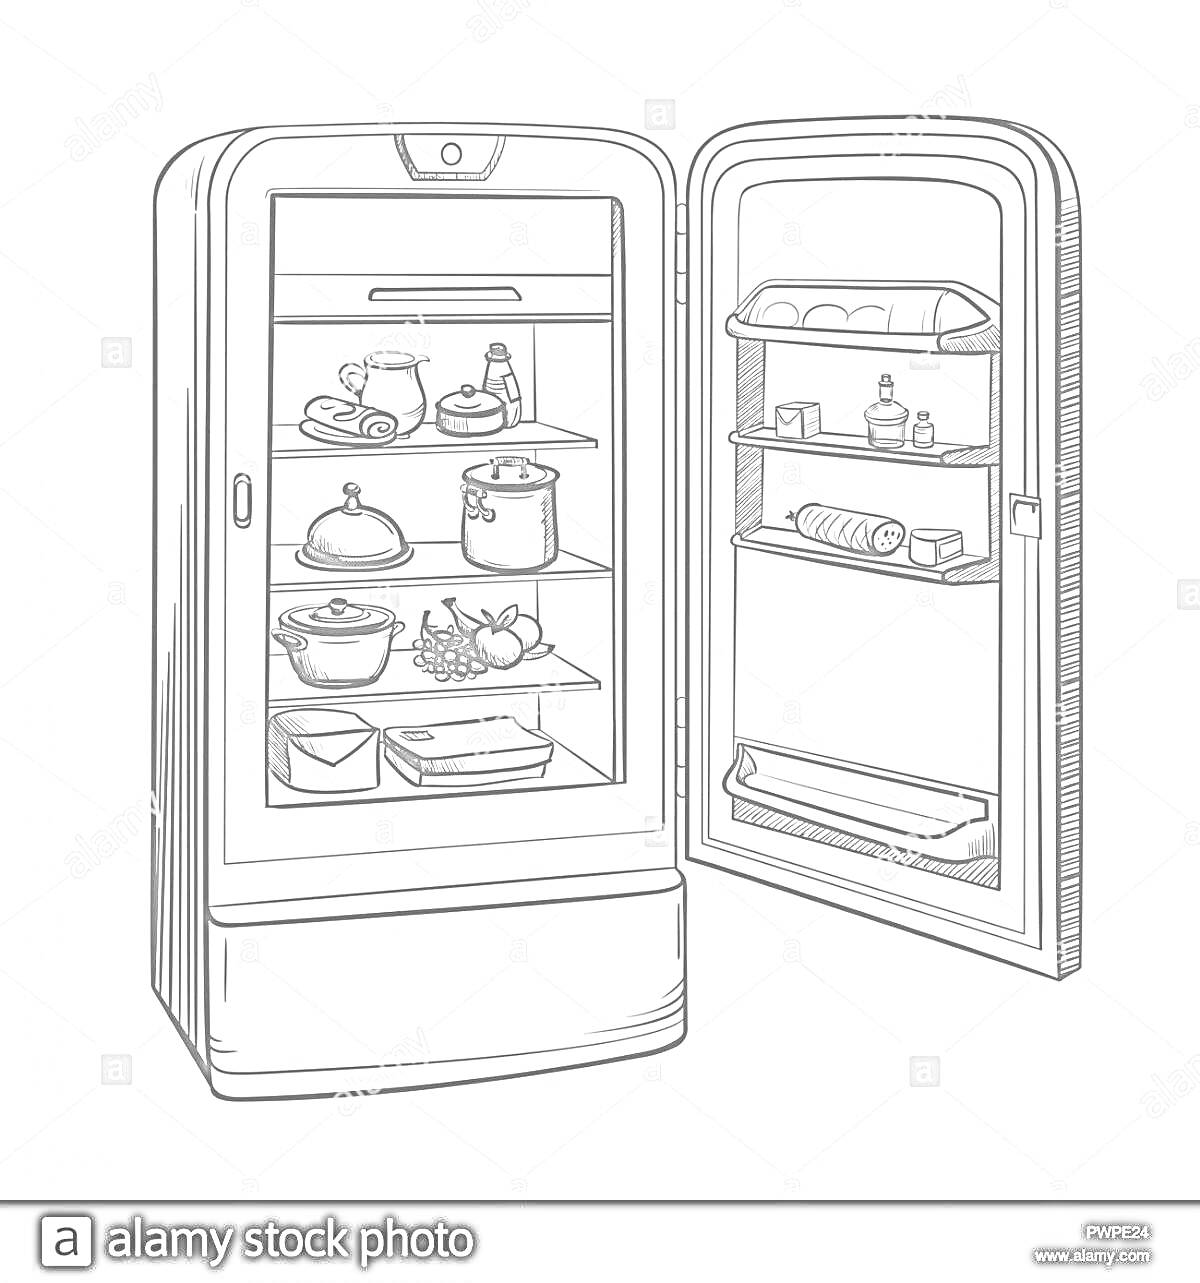 Раскраска Открытый холодильник с продуктами, включающий чайник, чашки, кастрюлю, банку, контейнеры, тарелки с едой, коробку с яйцами, бутылки и фрукты.